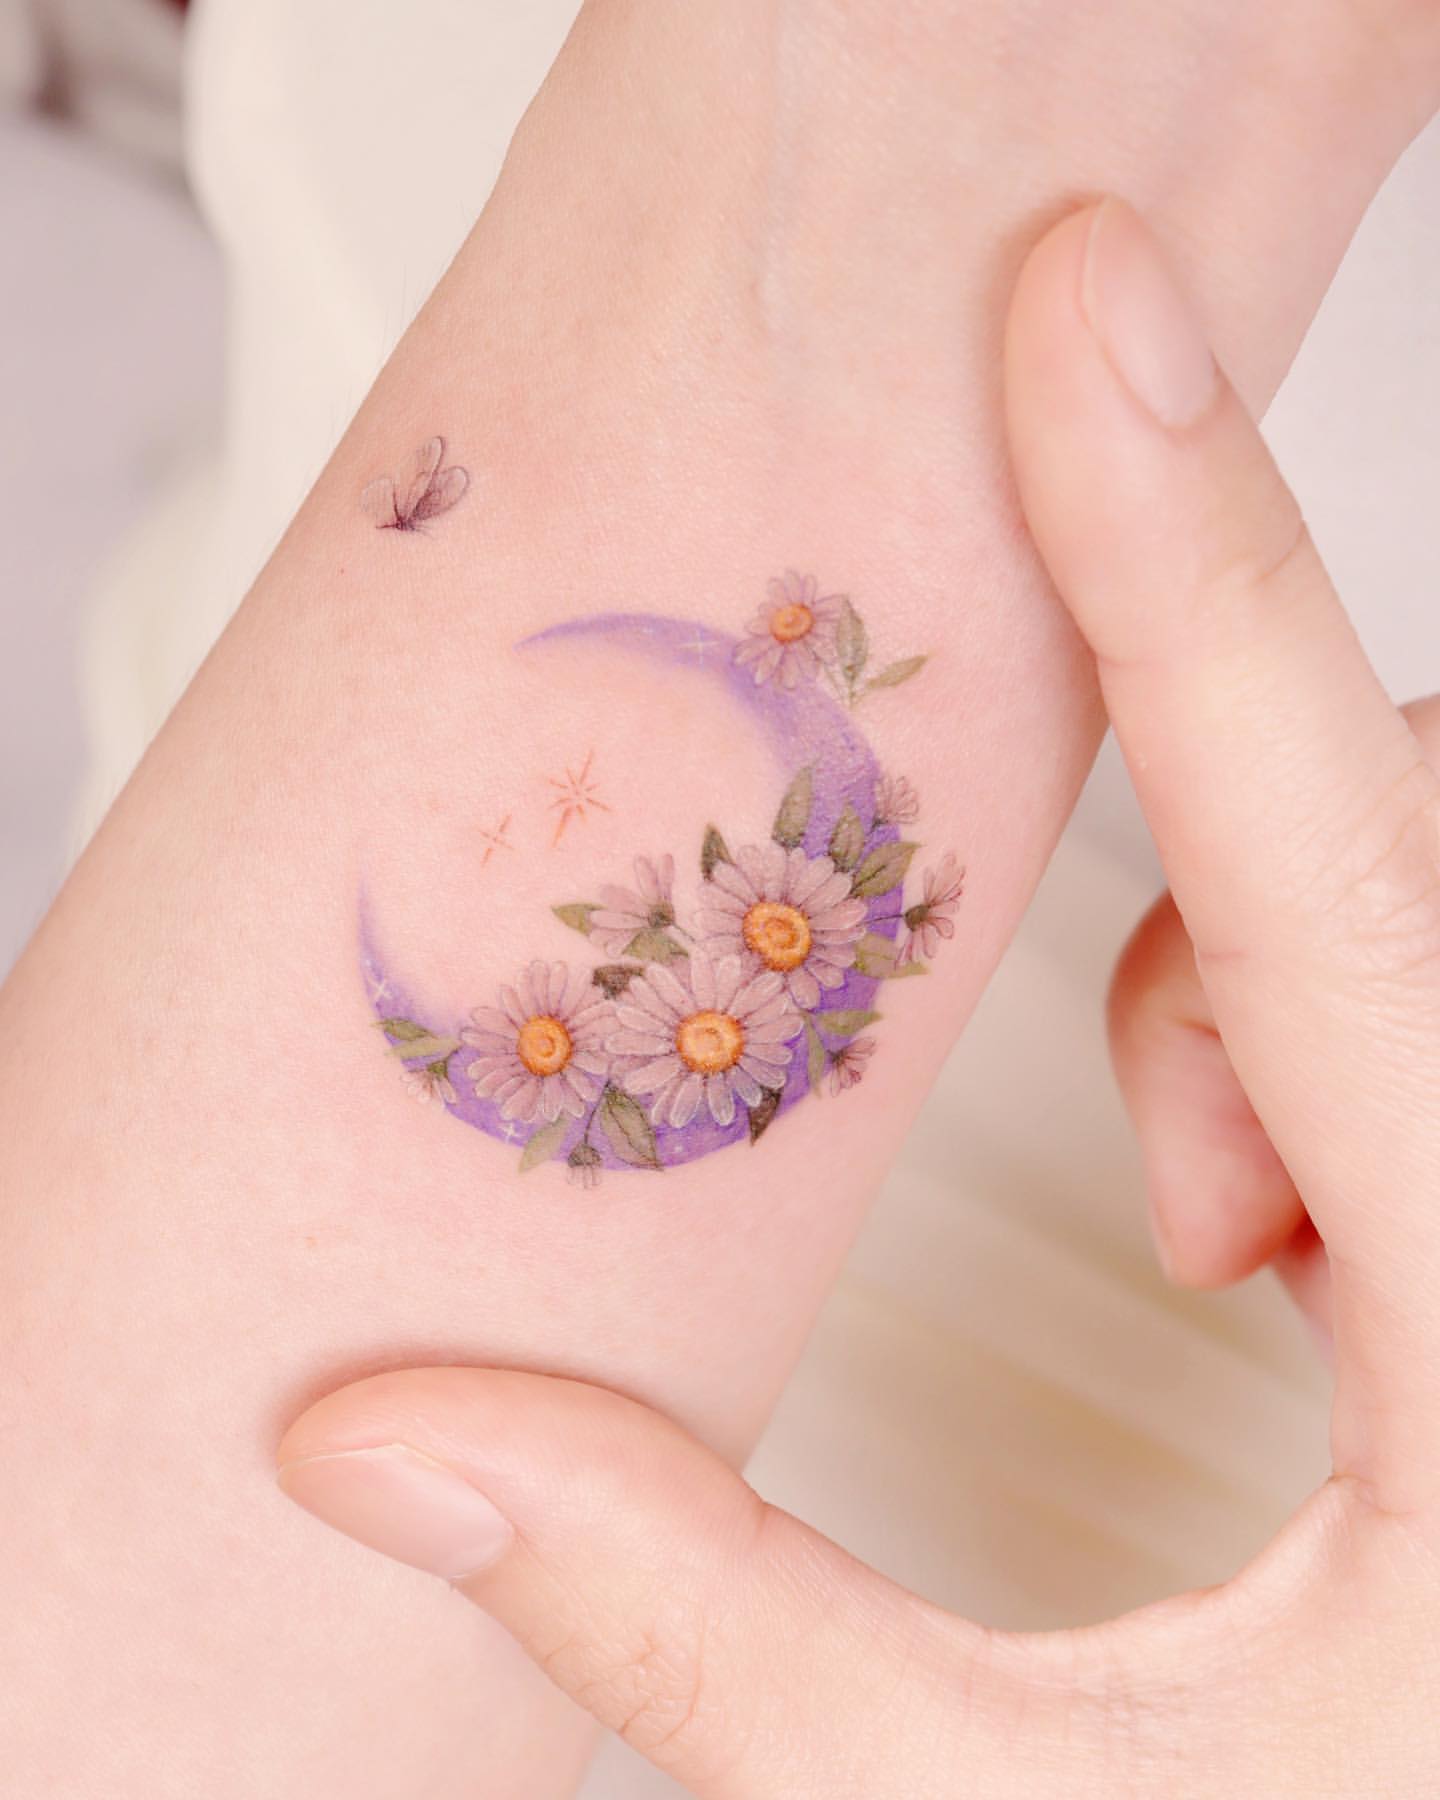 Daisy Tattoo Ideas 17